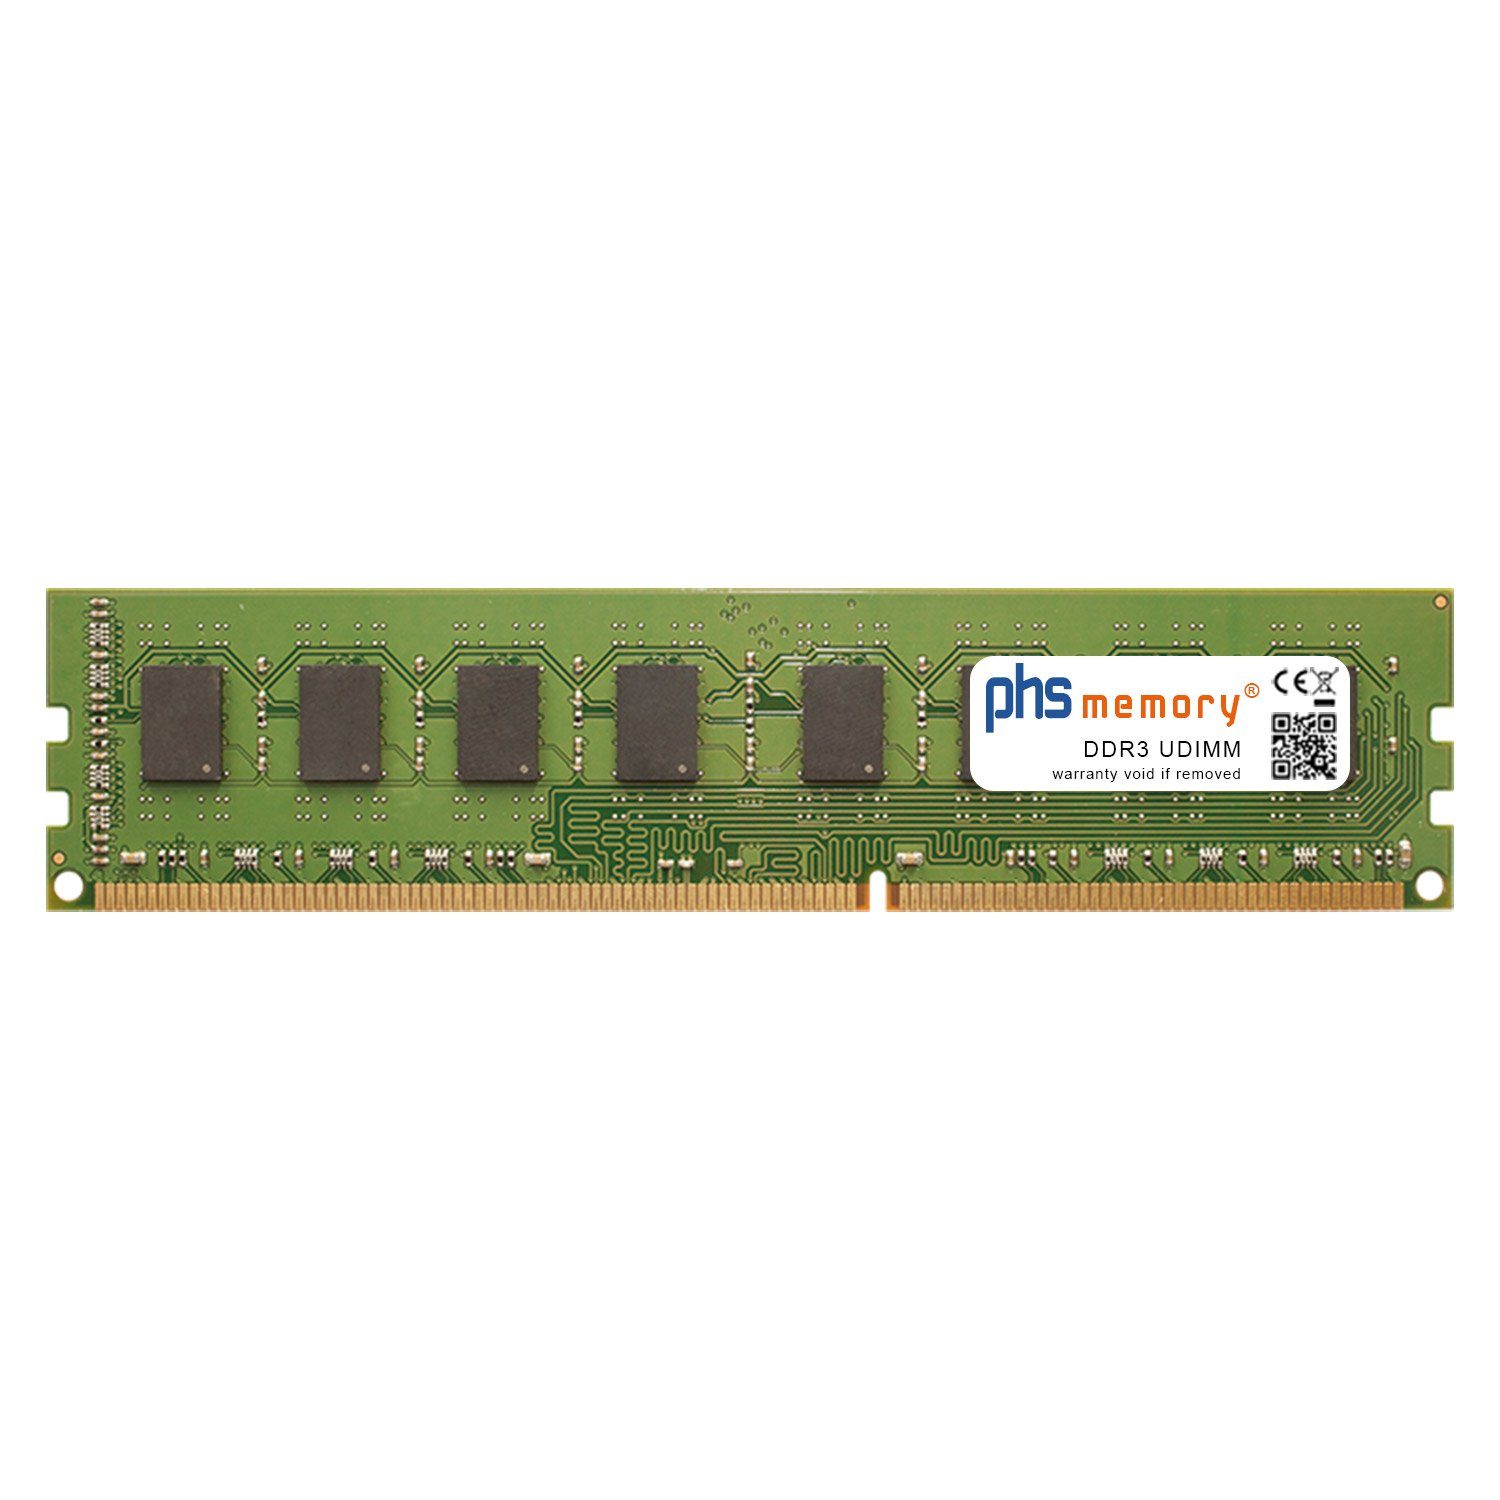 PHS-memory RAM für HP Pavilion p6-2390ef Arbeitsspeicher